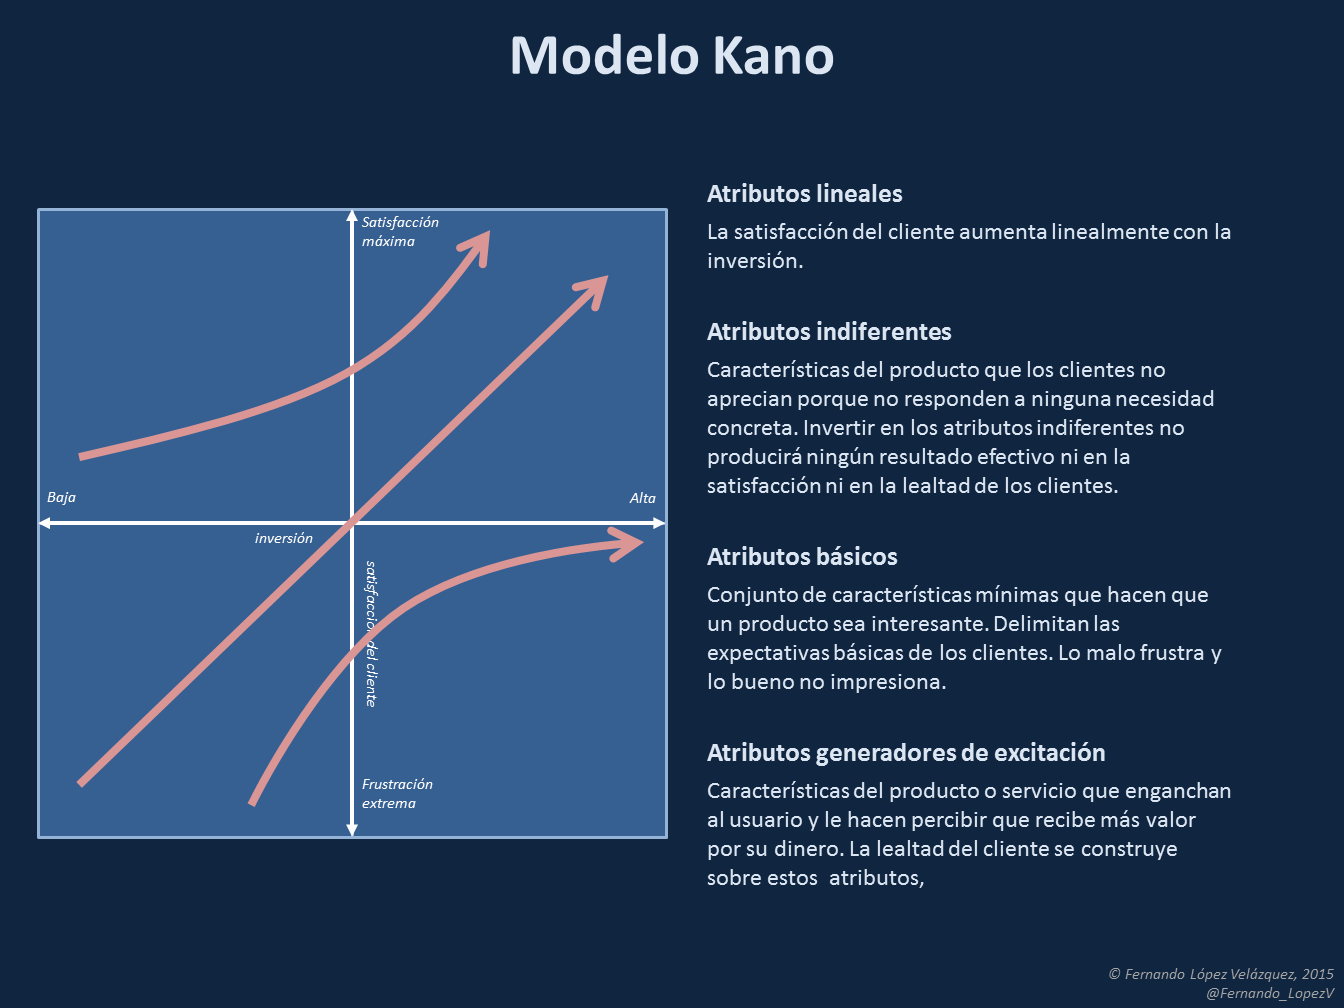 Capital Intelectual y Conocimiento Corporativo: El modelo Kano